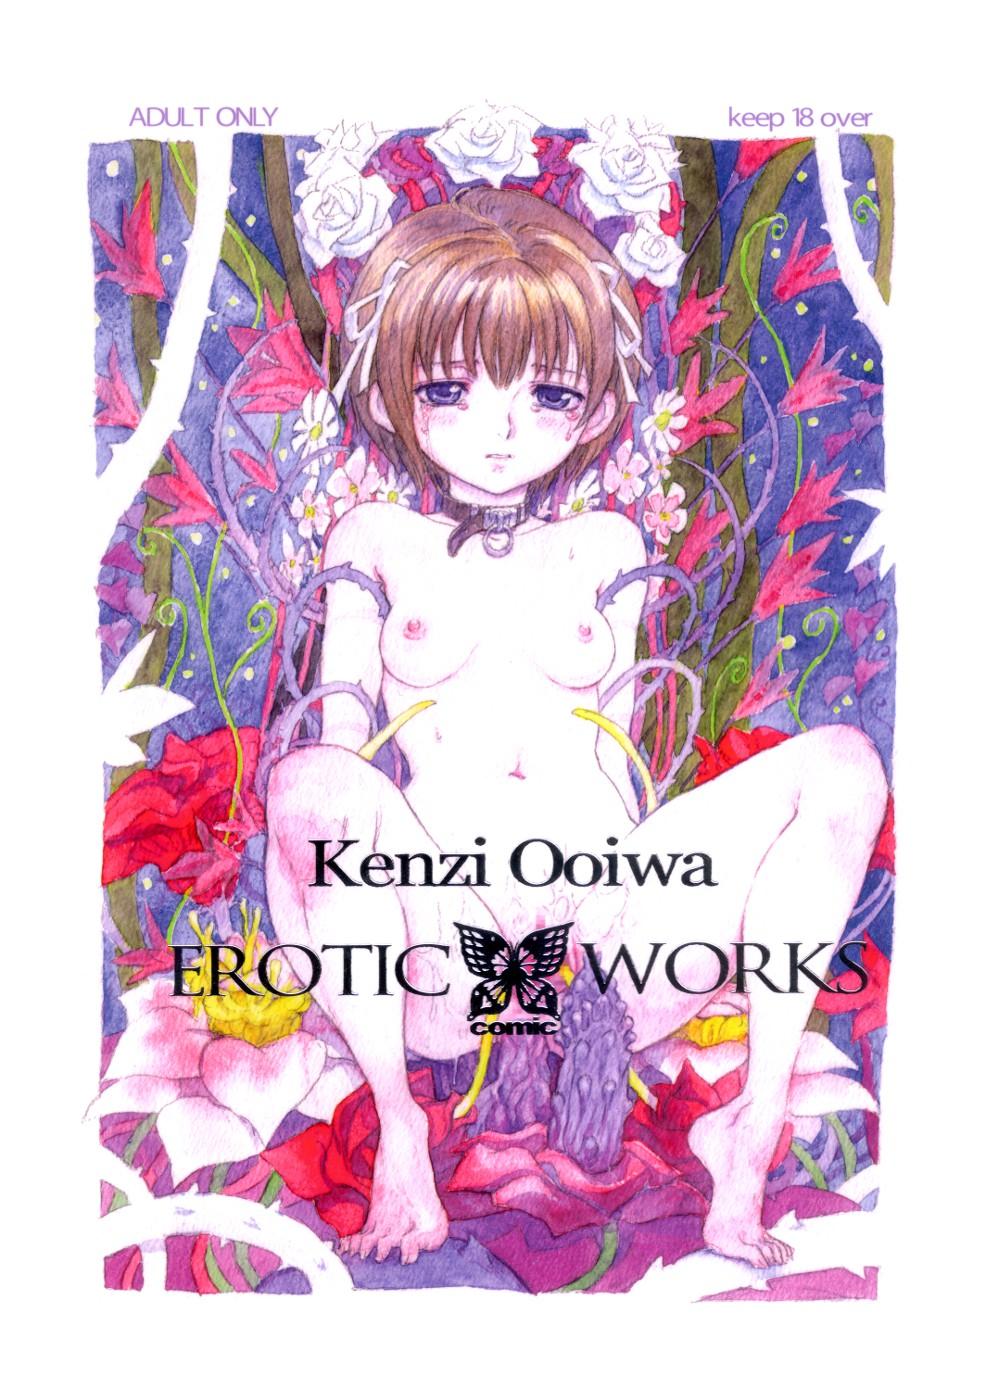 Kenzi Ooiwa EROTIC WORKS 0